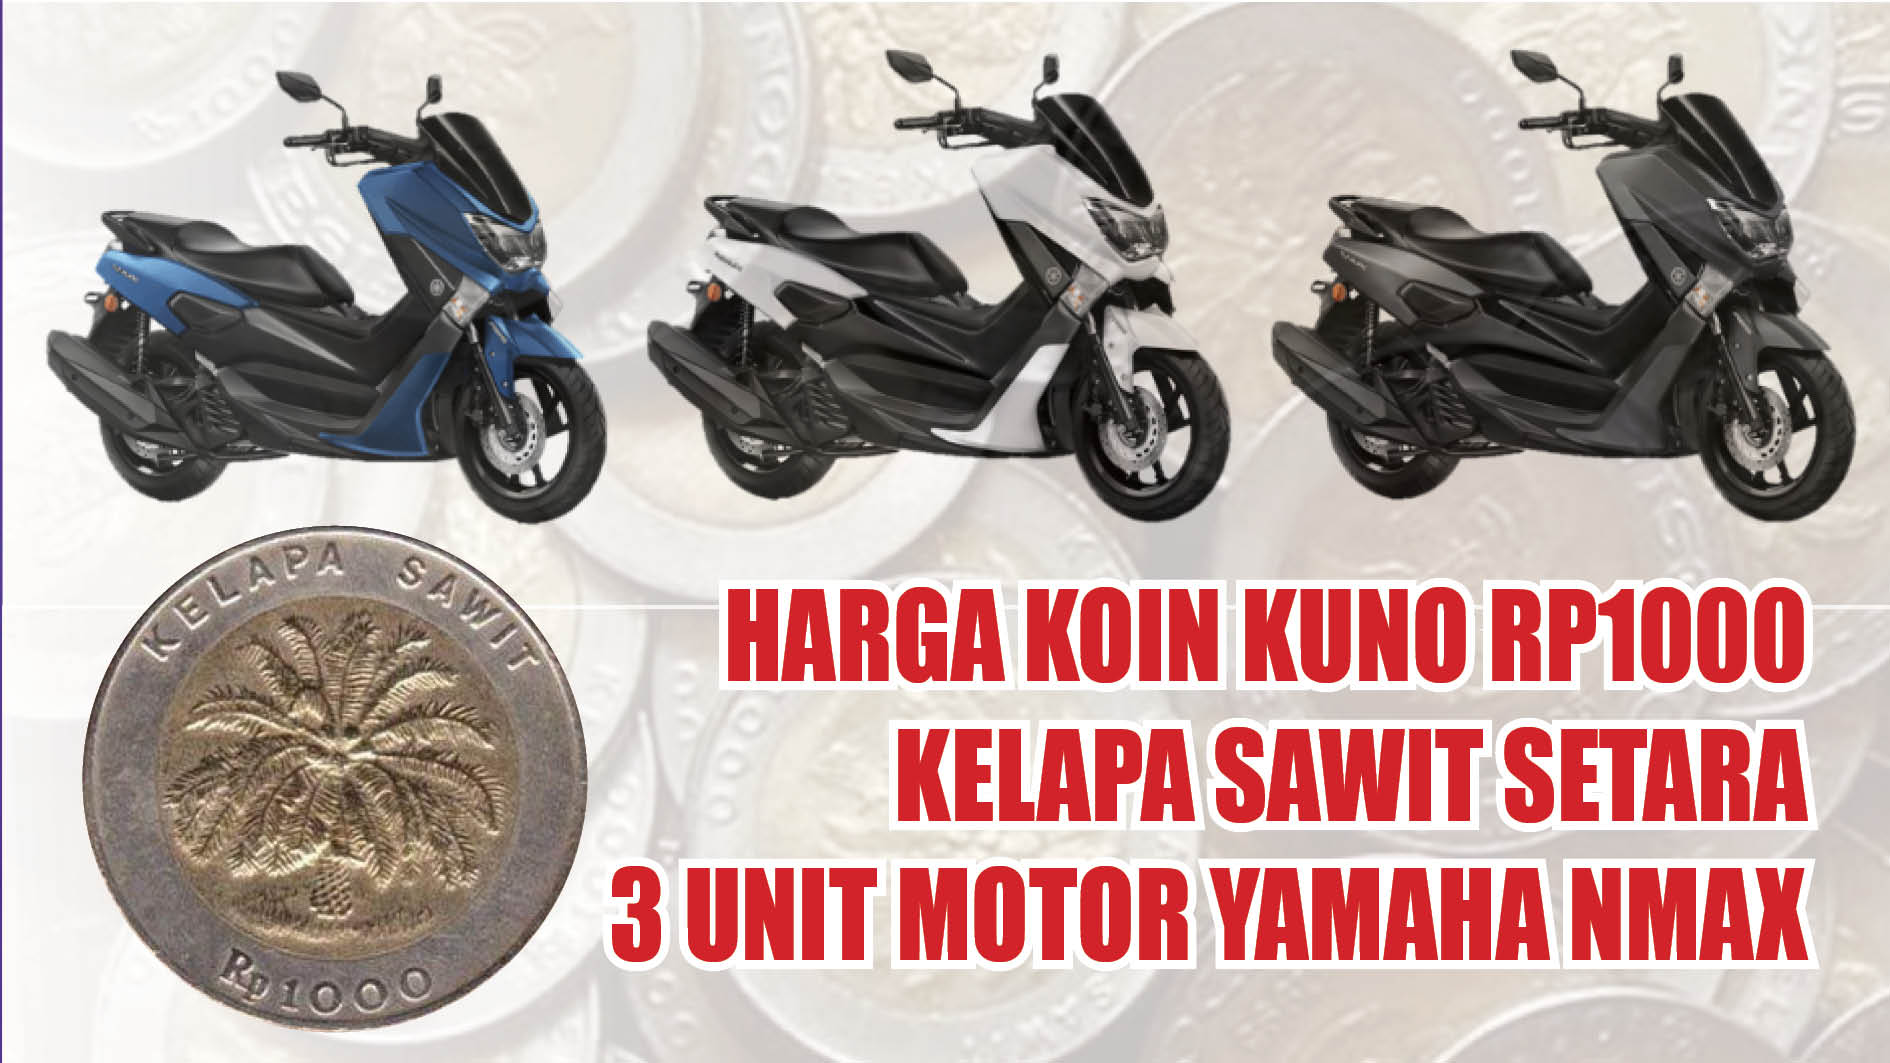 Harga Koin Kuno Rp1000 Kelapa Sawit Setara 3 Unit Motor Yamaha Nmax, Benarkah?